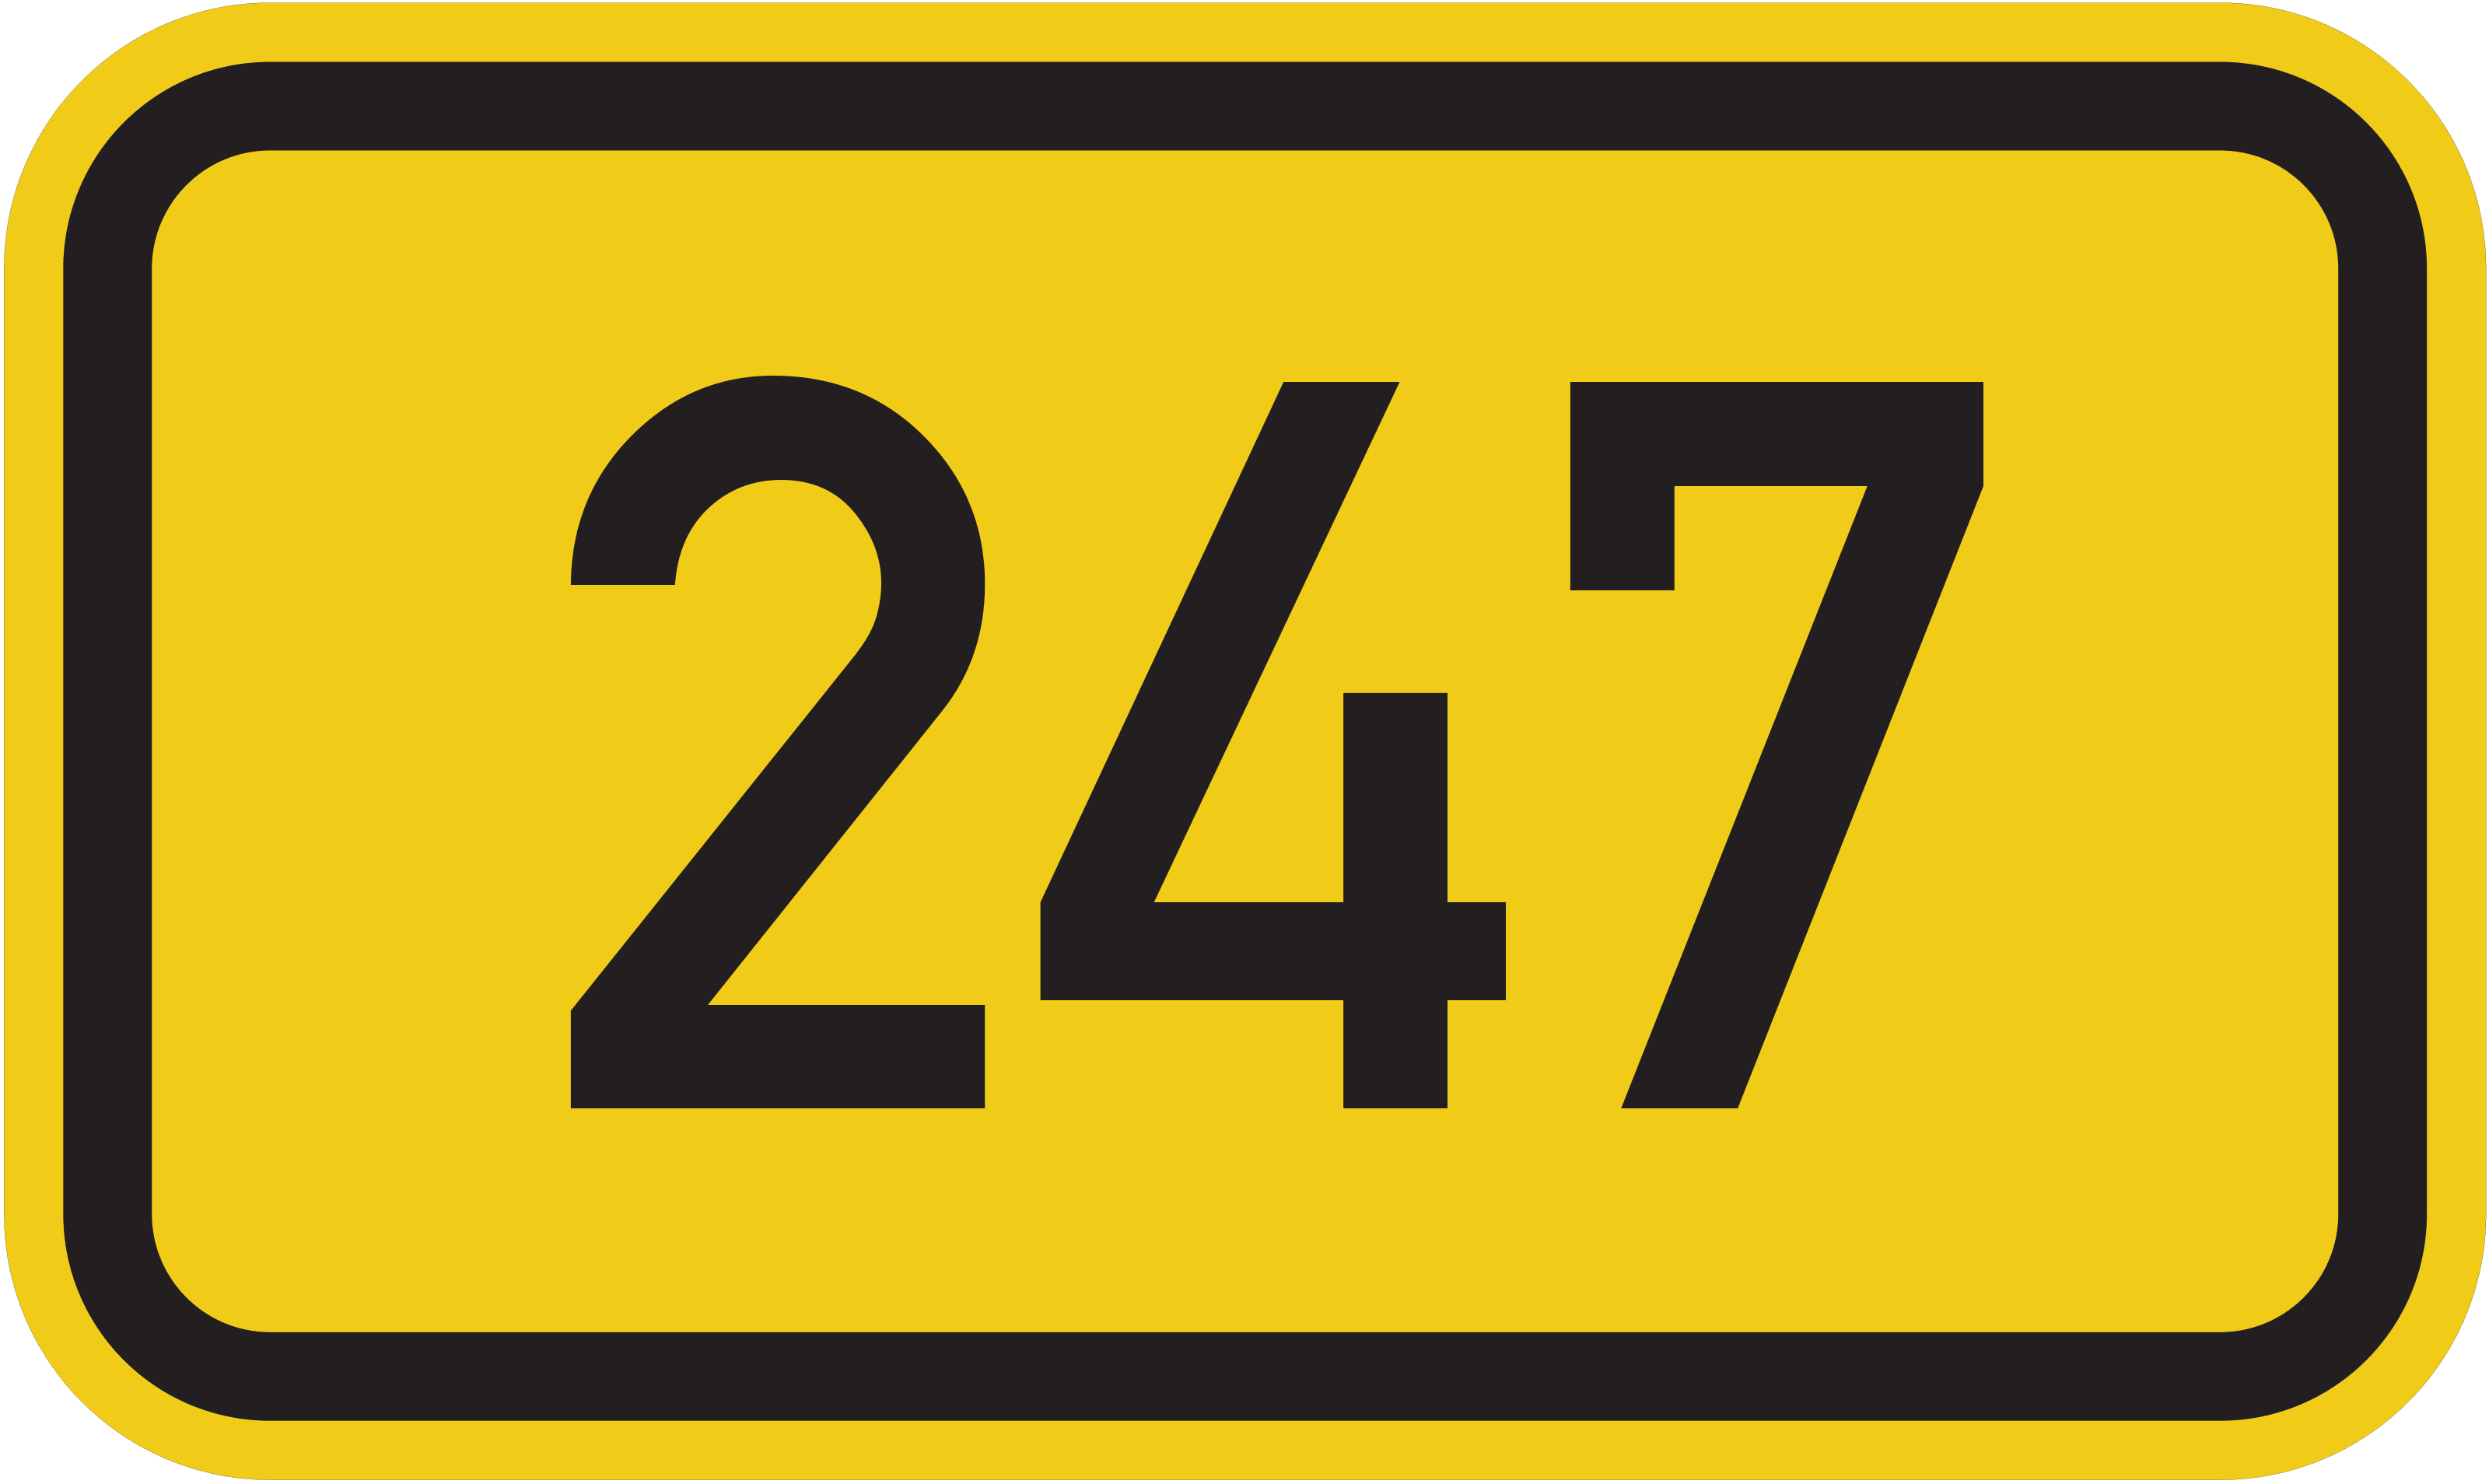 Bundesstraße 247